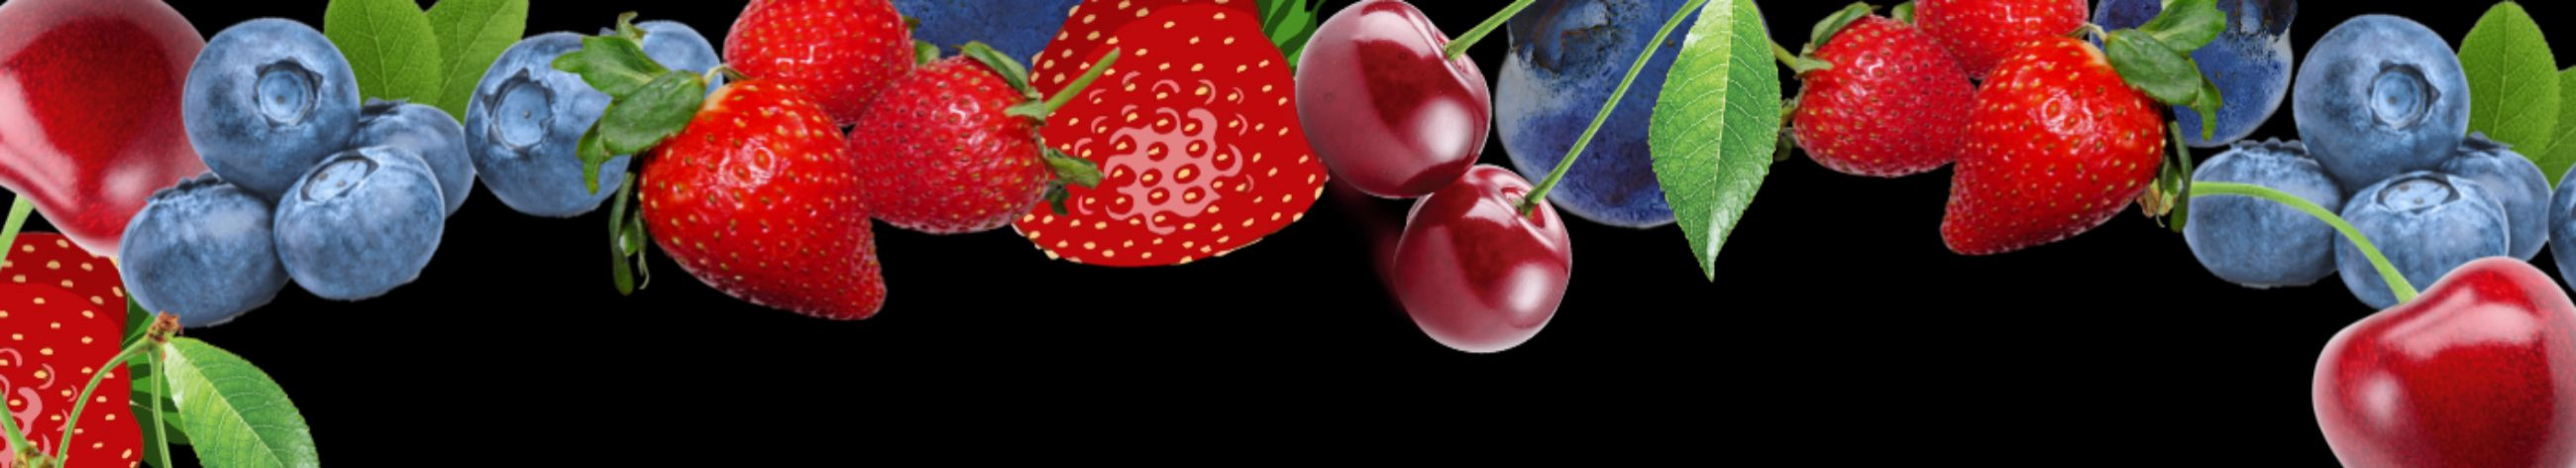 BerryMarket OÜ on spetsialiseerunud maasikate-, vaarikate- ja muude marjade ning aiasaaduste müügile. Meie müügiletid on leitavad hooajaliselt kuni 15 asukohas, lisaks tarnime kaupa periooditi kliendile koju kätte.